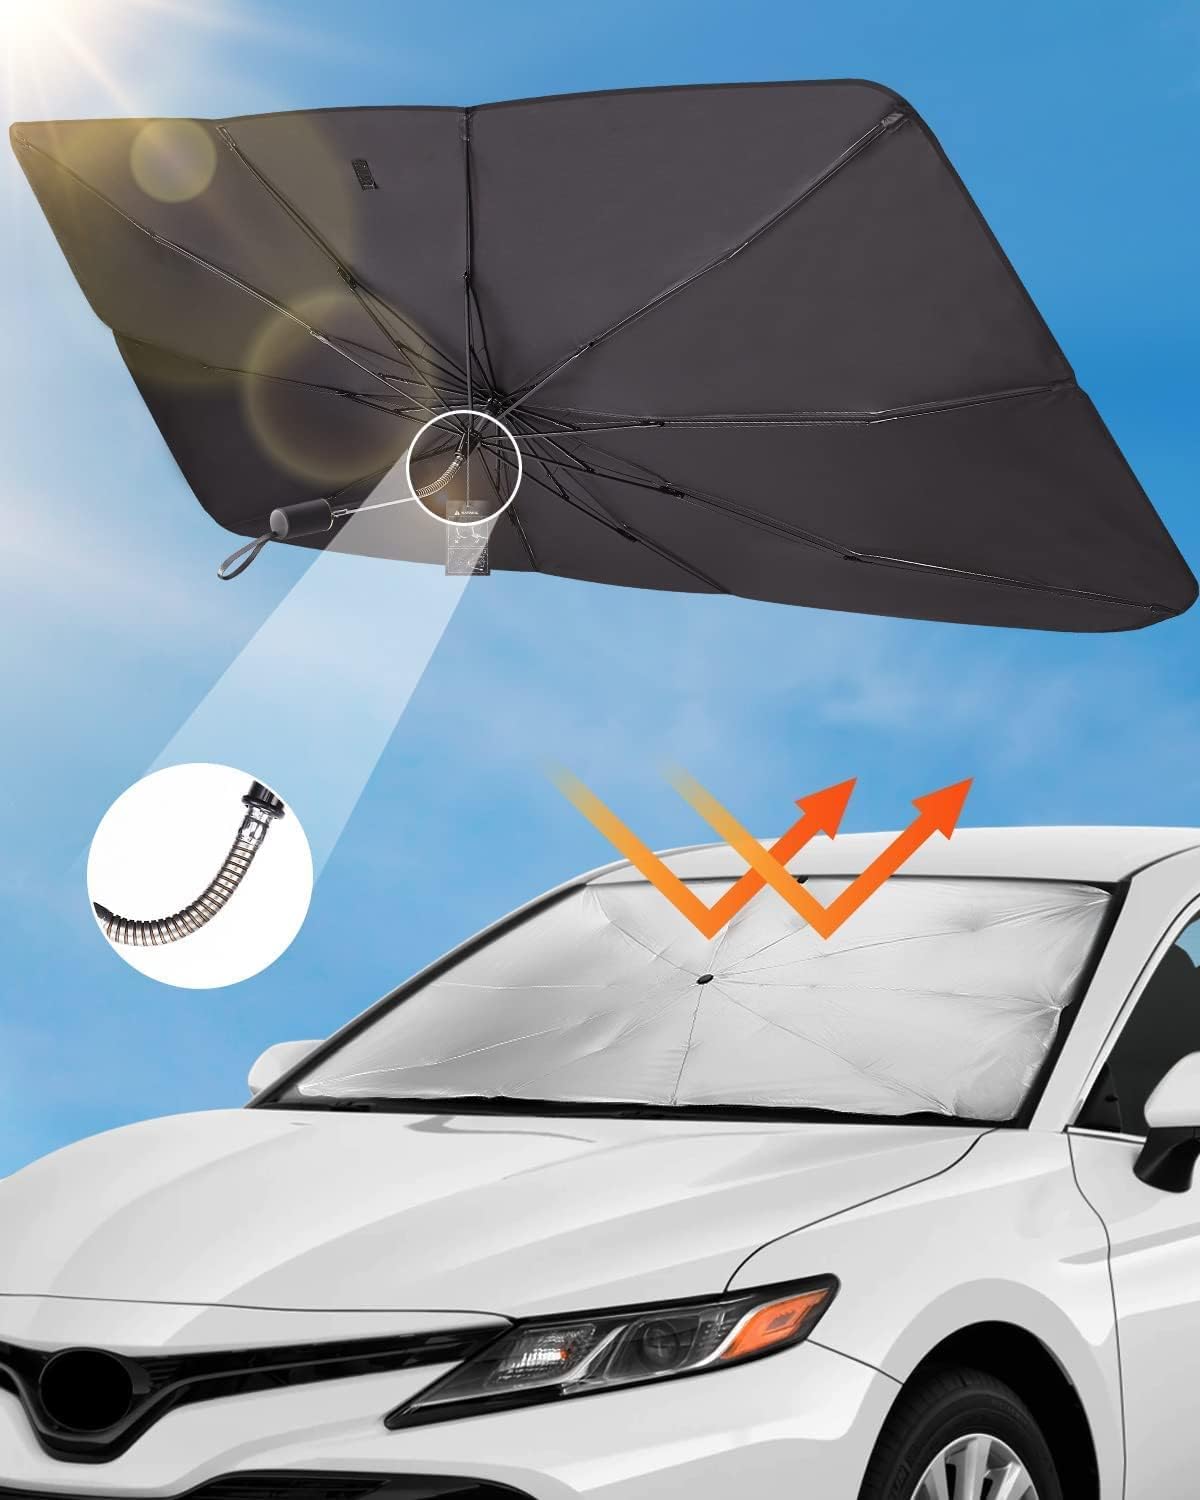 Sonnenschutz Auto Frontscheibe für Freed GB3 2009-2016, Faltbarer UV-Schutz Sonnenschirm Wärmeisolierung Frontscheibenabdeckung von DdaiXQ